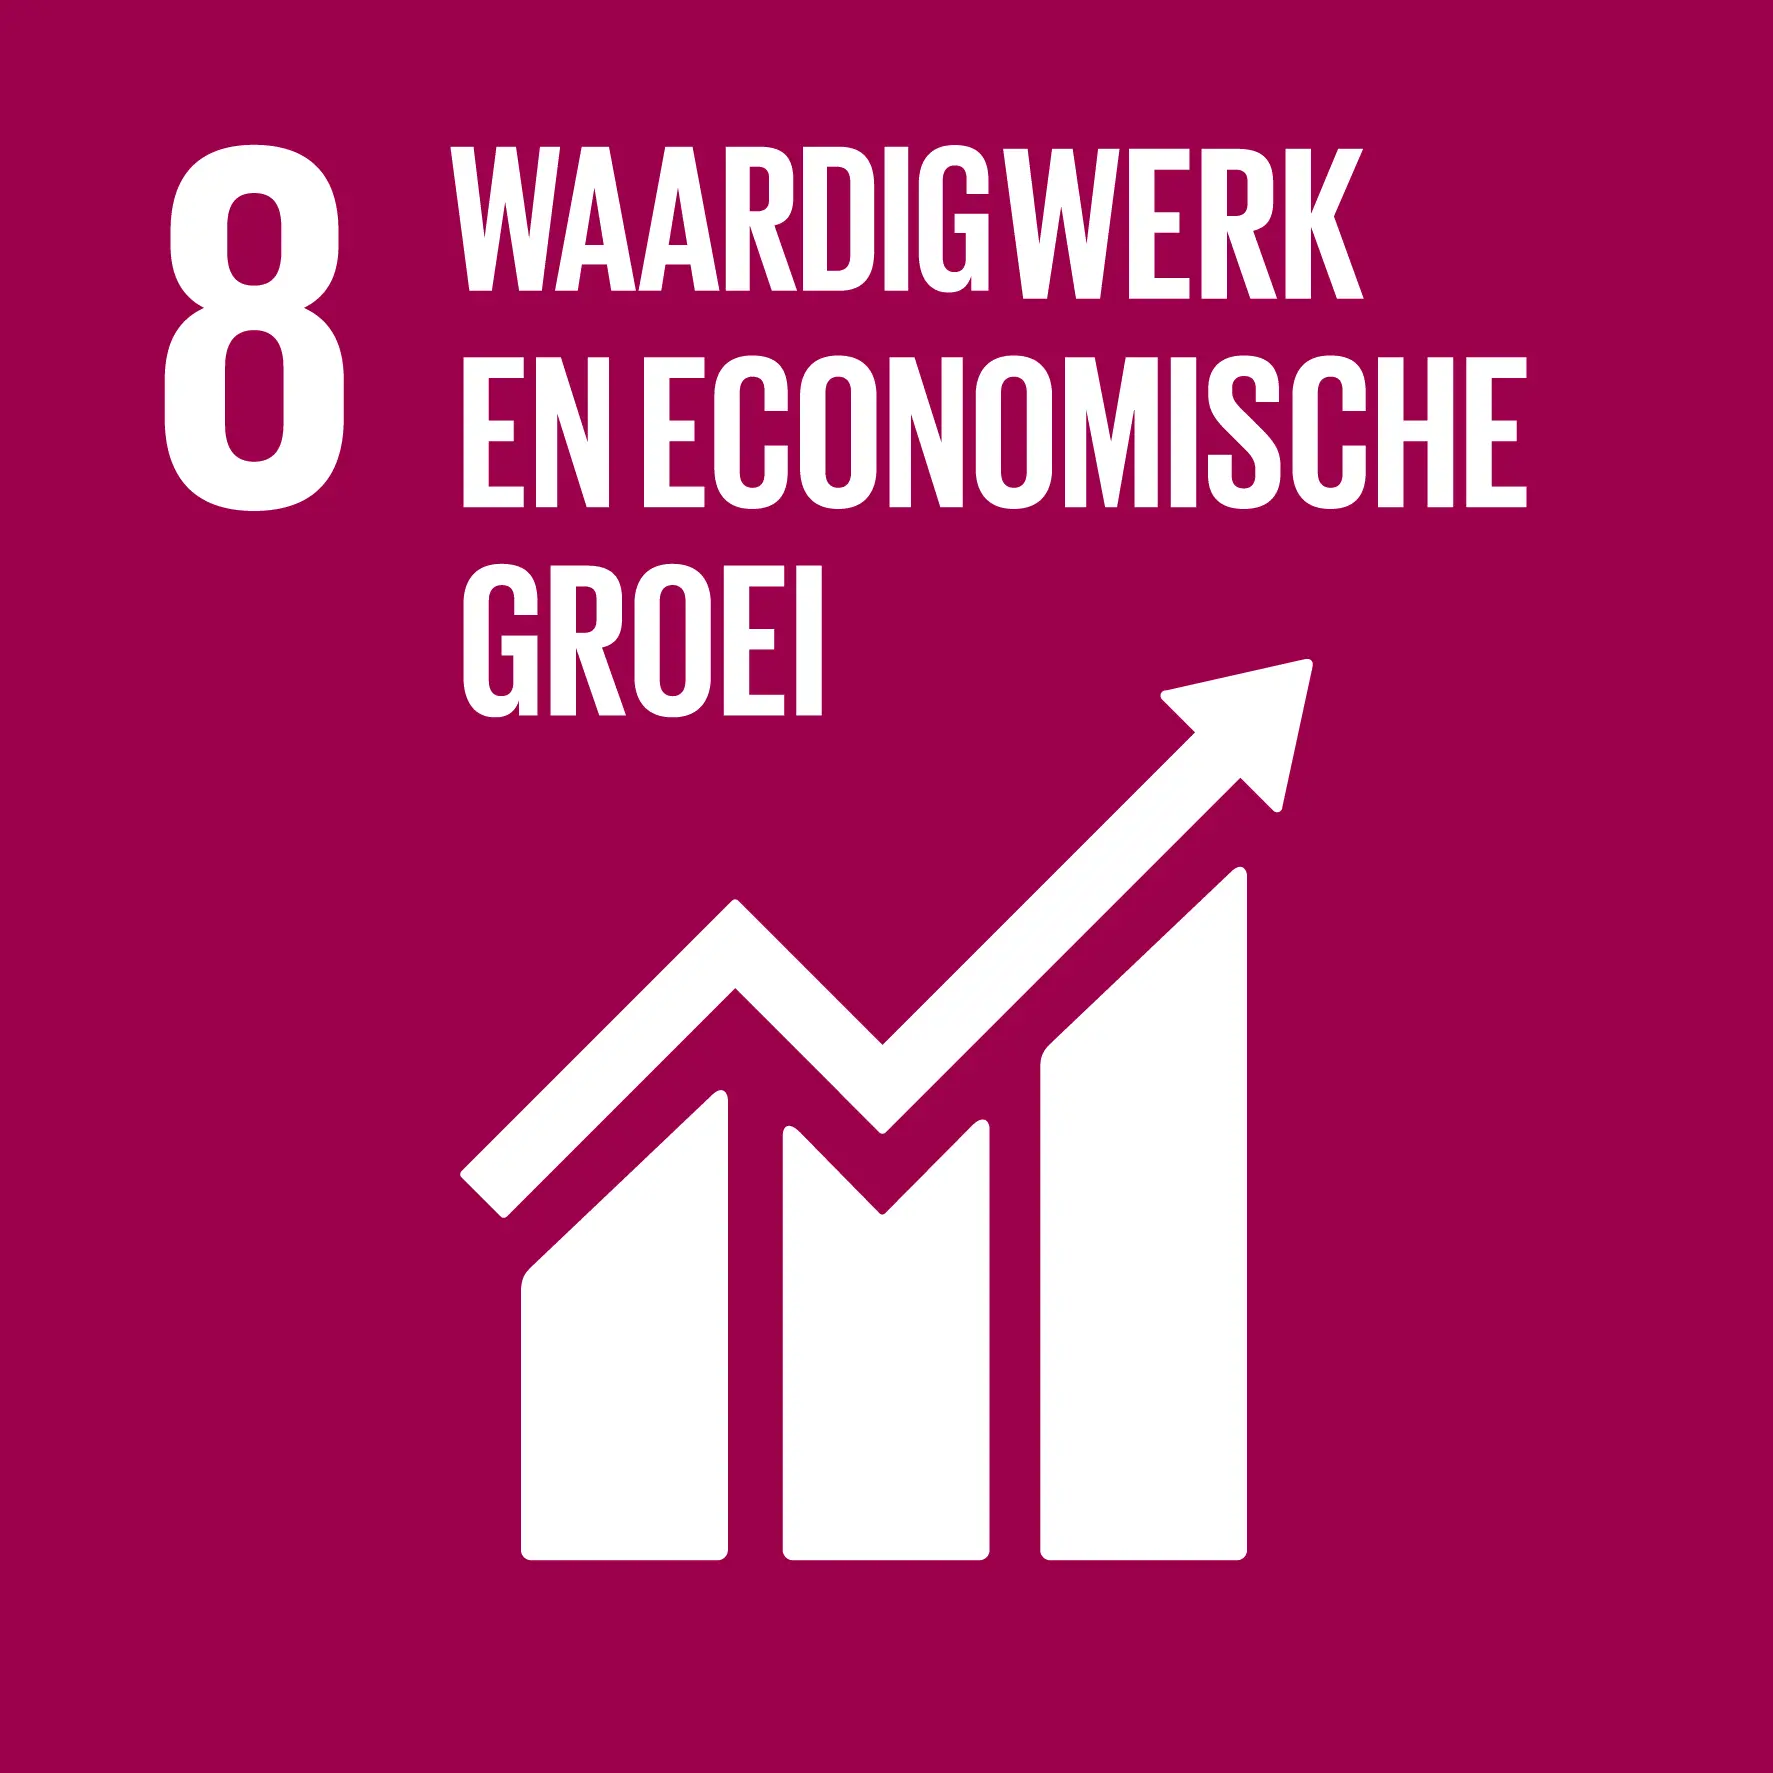 SDG 8. Waardig werk en economische groei